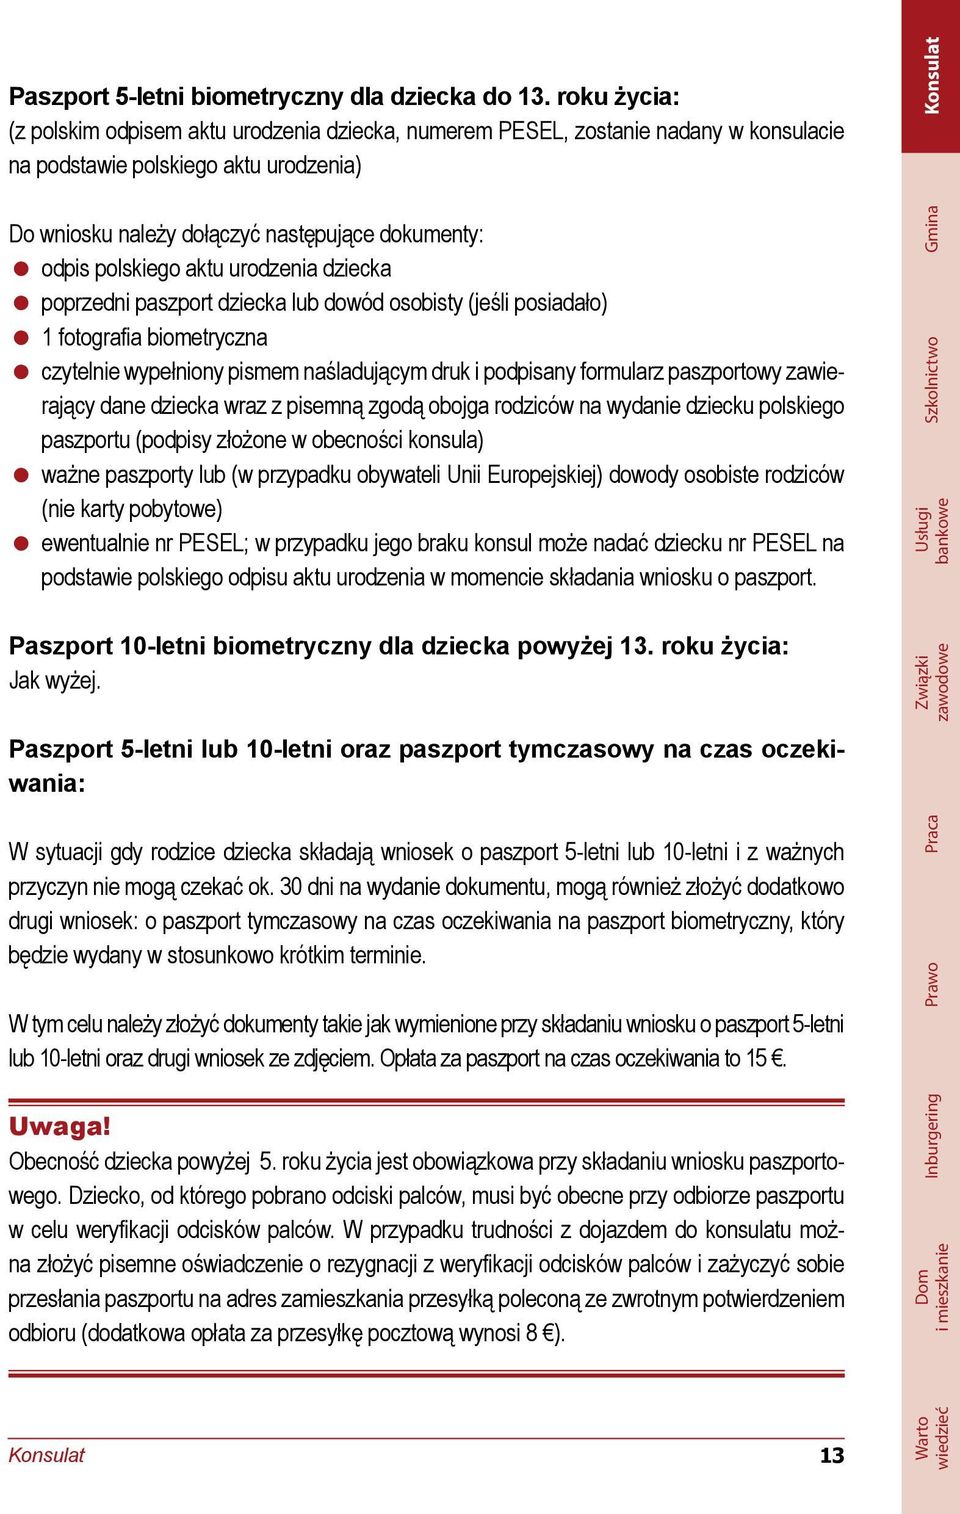 polskiego aktu urodzenia dziecka poprzedni paszport dziecka lub dowód osobisty (jeśli posiadało) 1 fotografia biometryczna czytelnie wypełniony pismem naśladującym druk i podpisany formularz